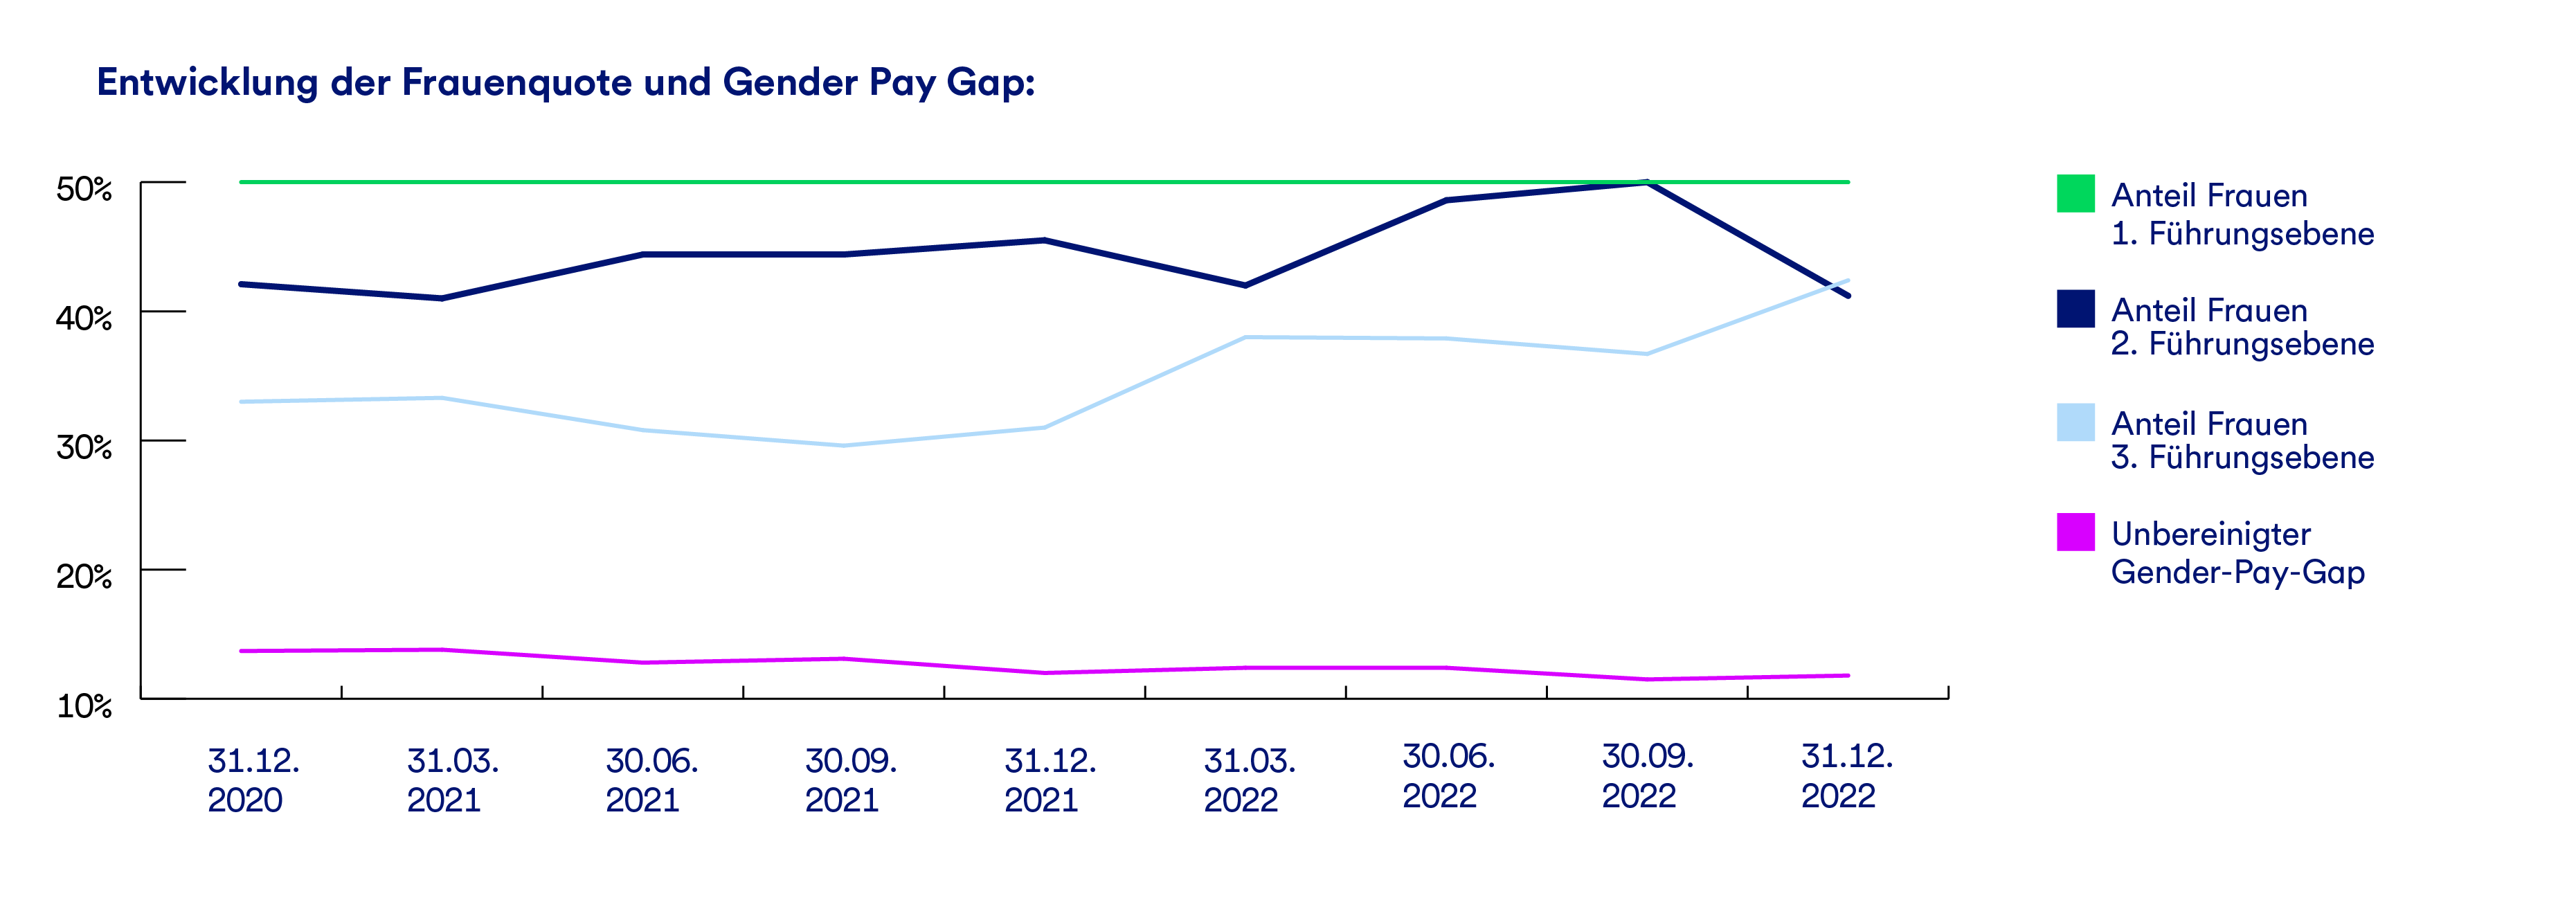 Ein Graph, der die Entwicklung der Frauenquote und des Gender-Pay-Gaps in der GLS Bank darstellt.